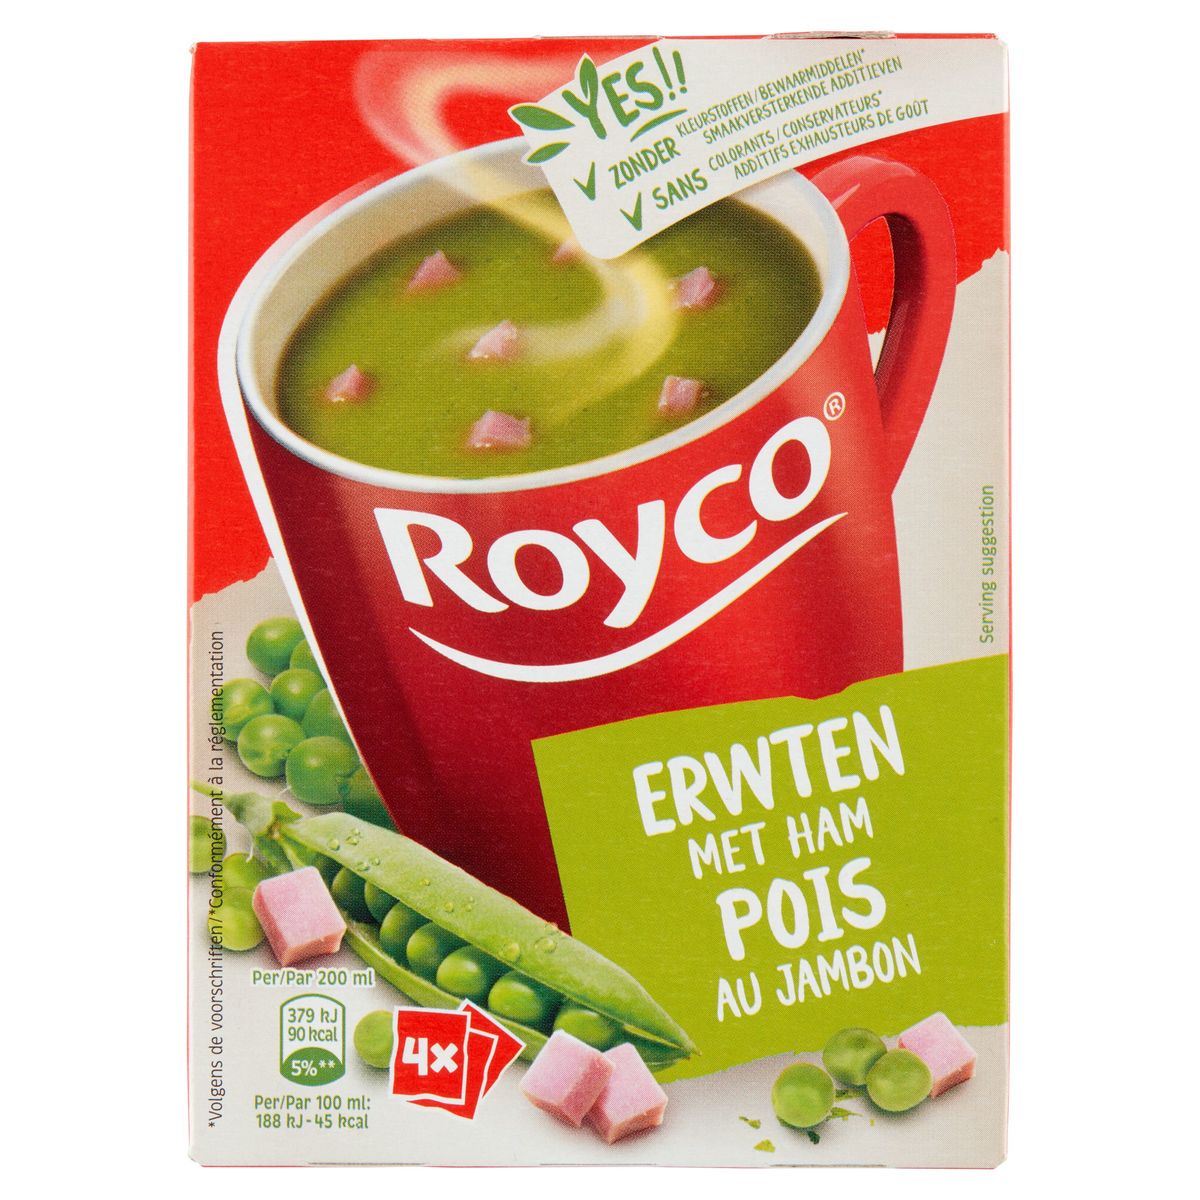 Royco Pois au Jambon 4 x 22.5 g